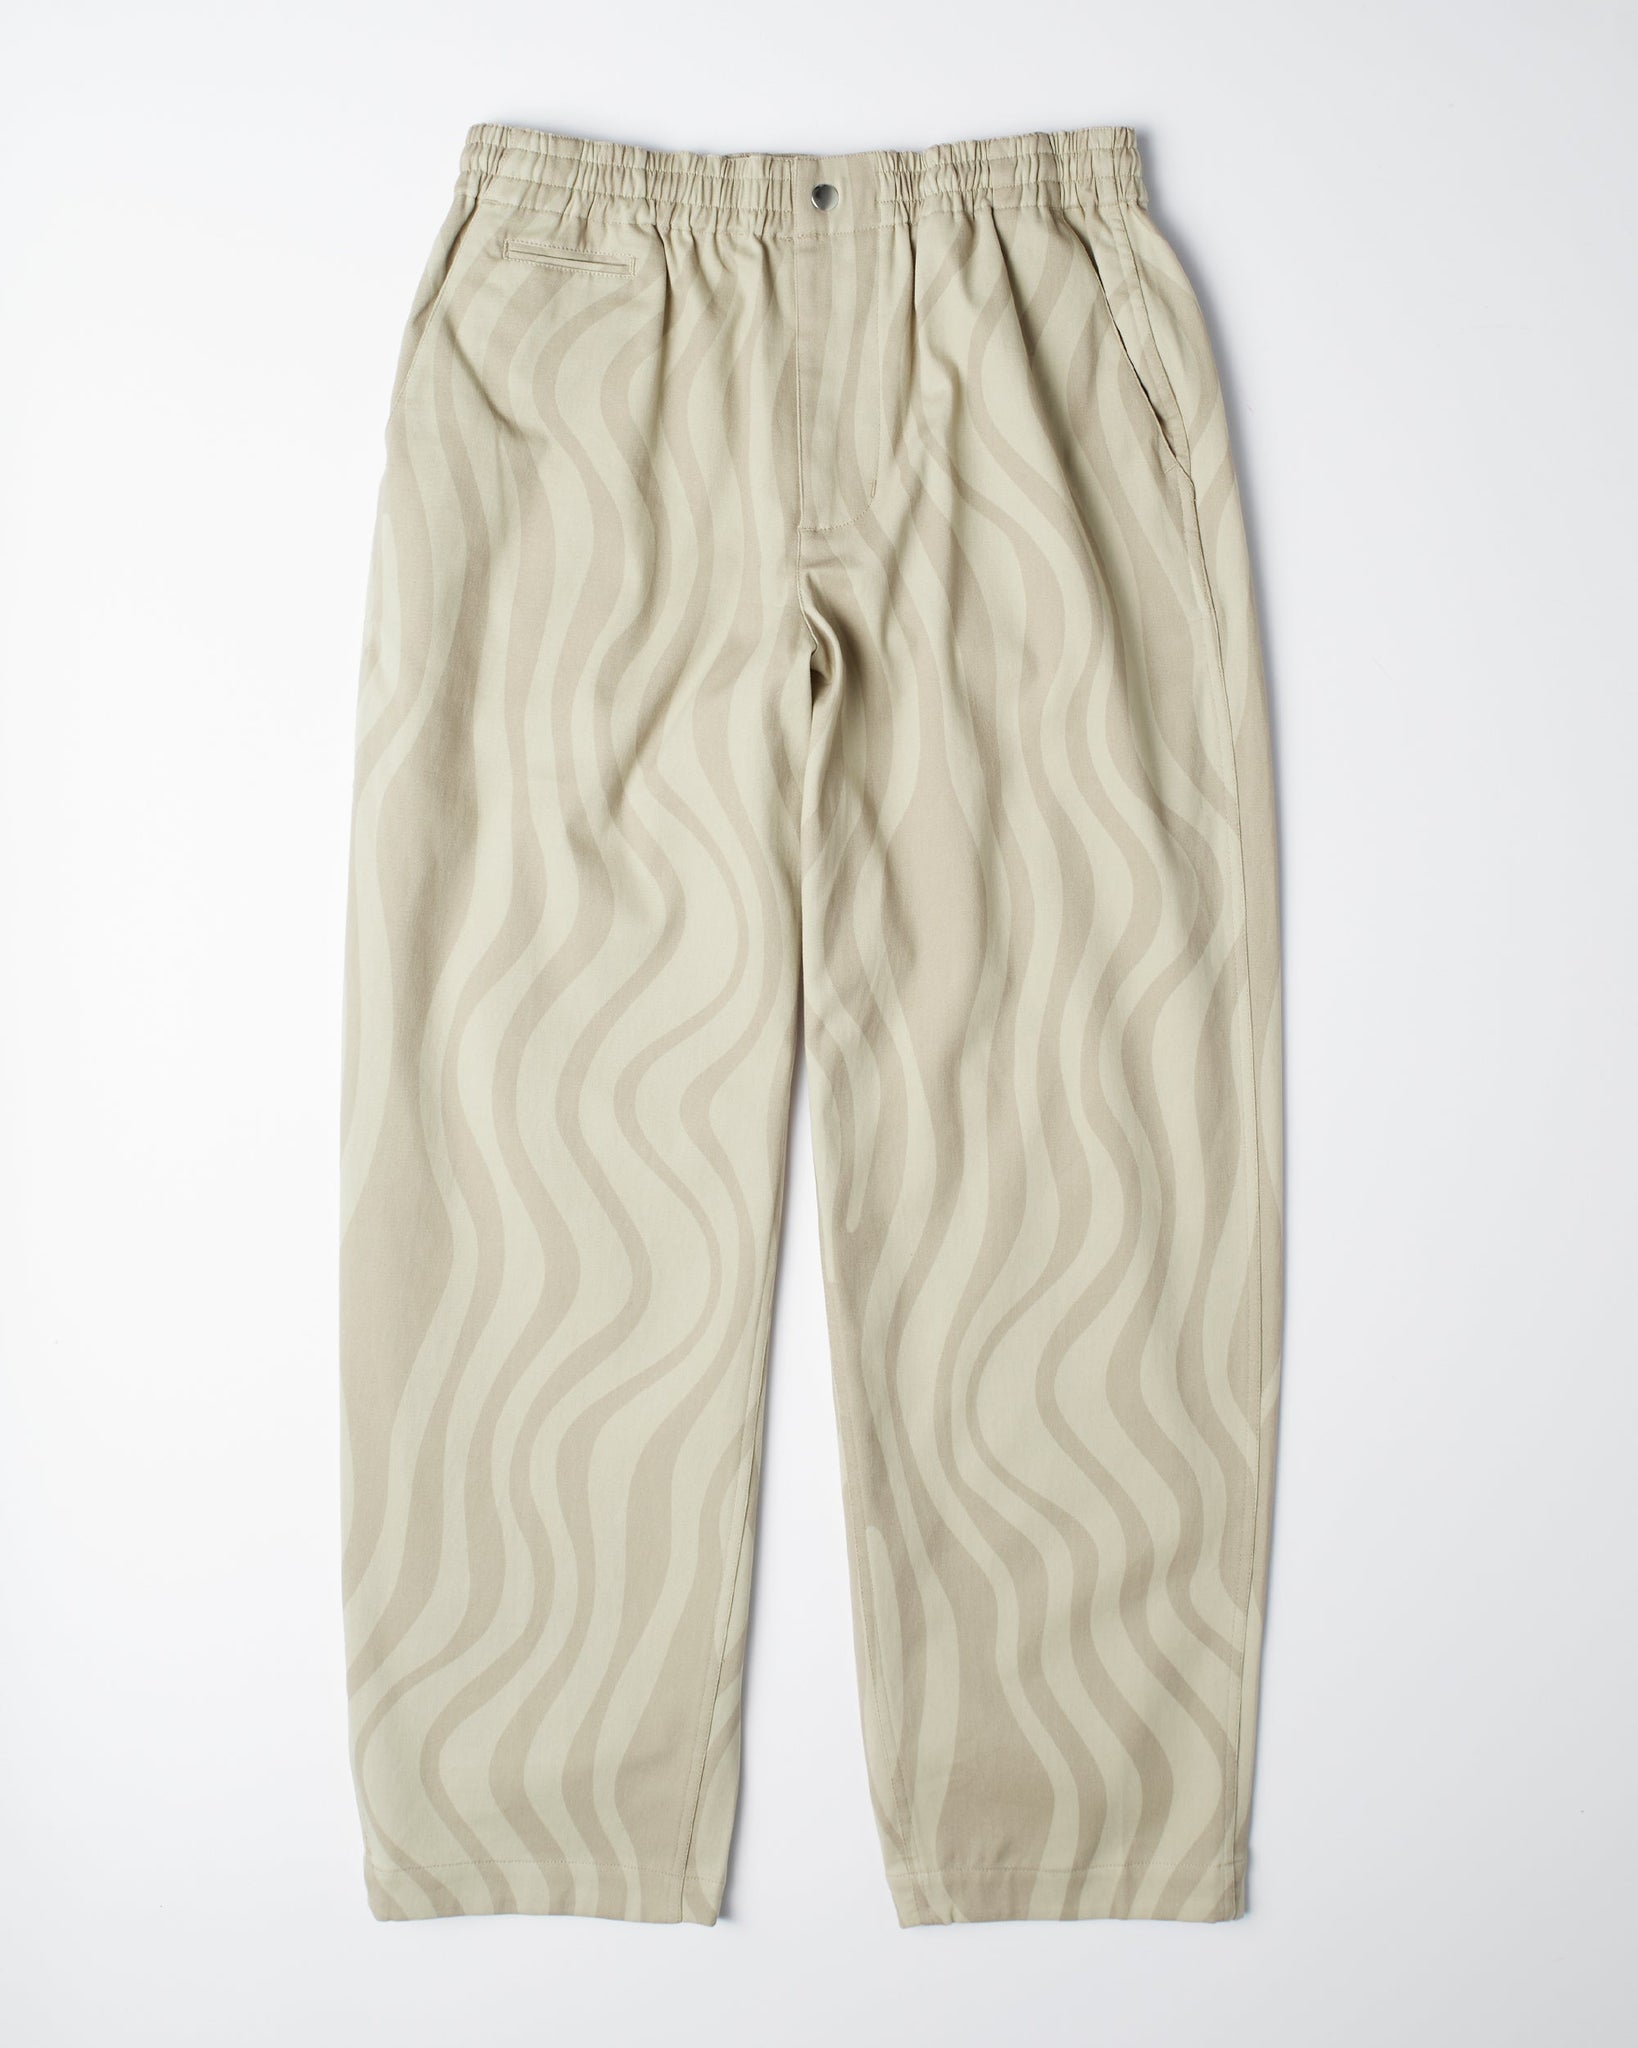 flowing stripes pants - tan